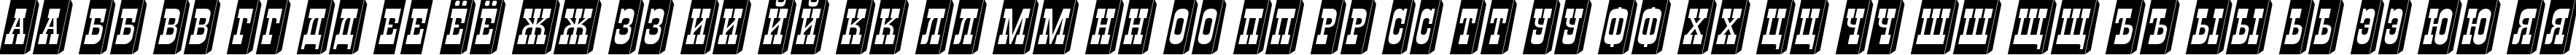 Пример написания русского алфавита шрифтом a_GildiaTiulPillar3D Italic